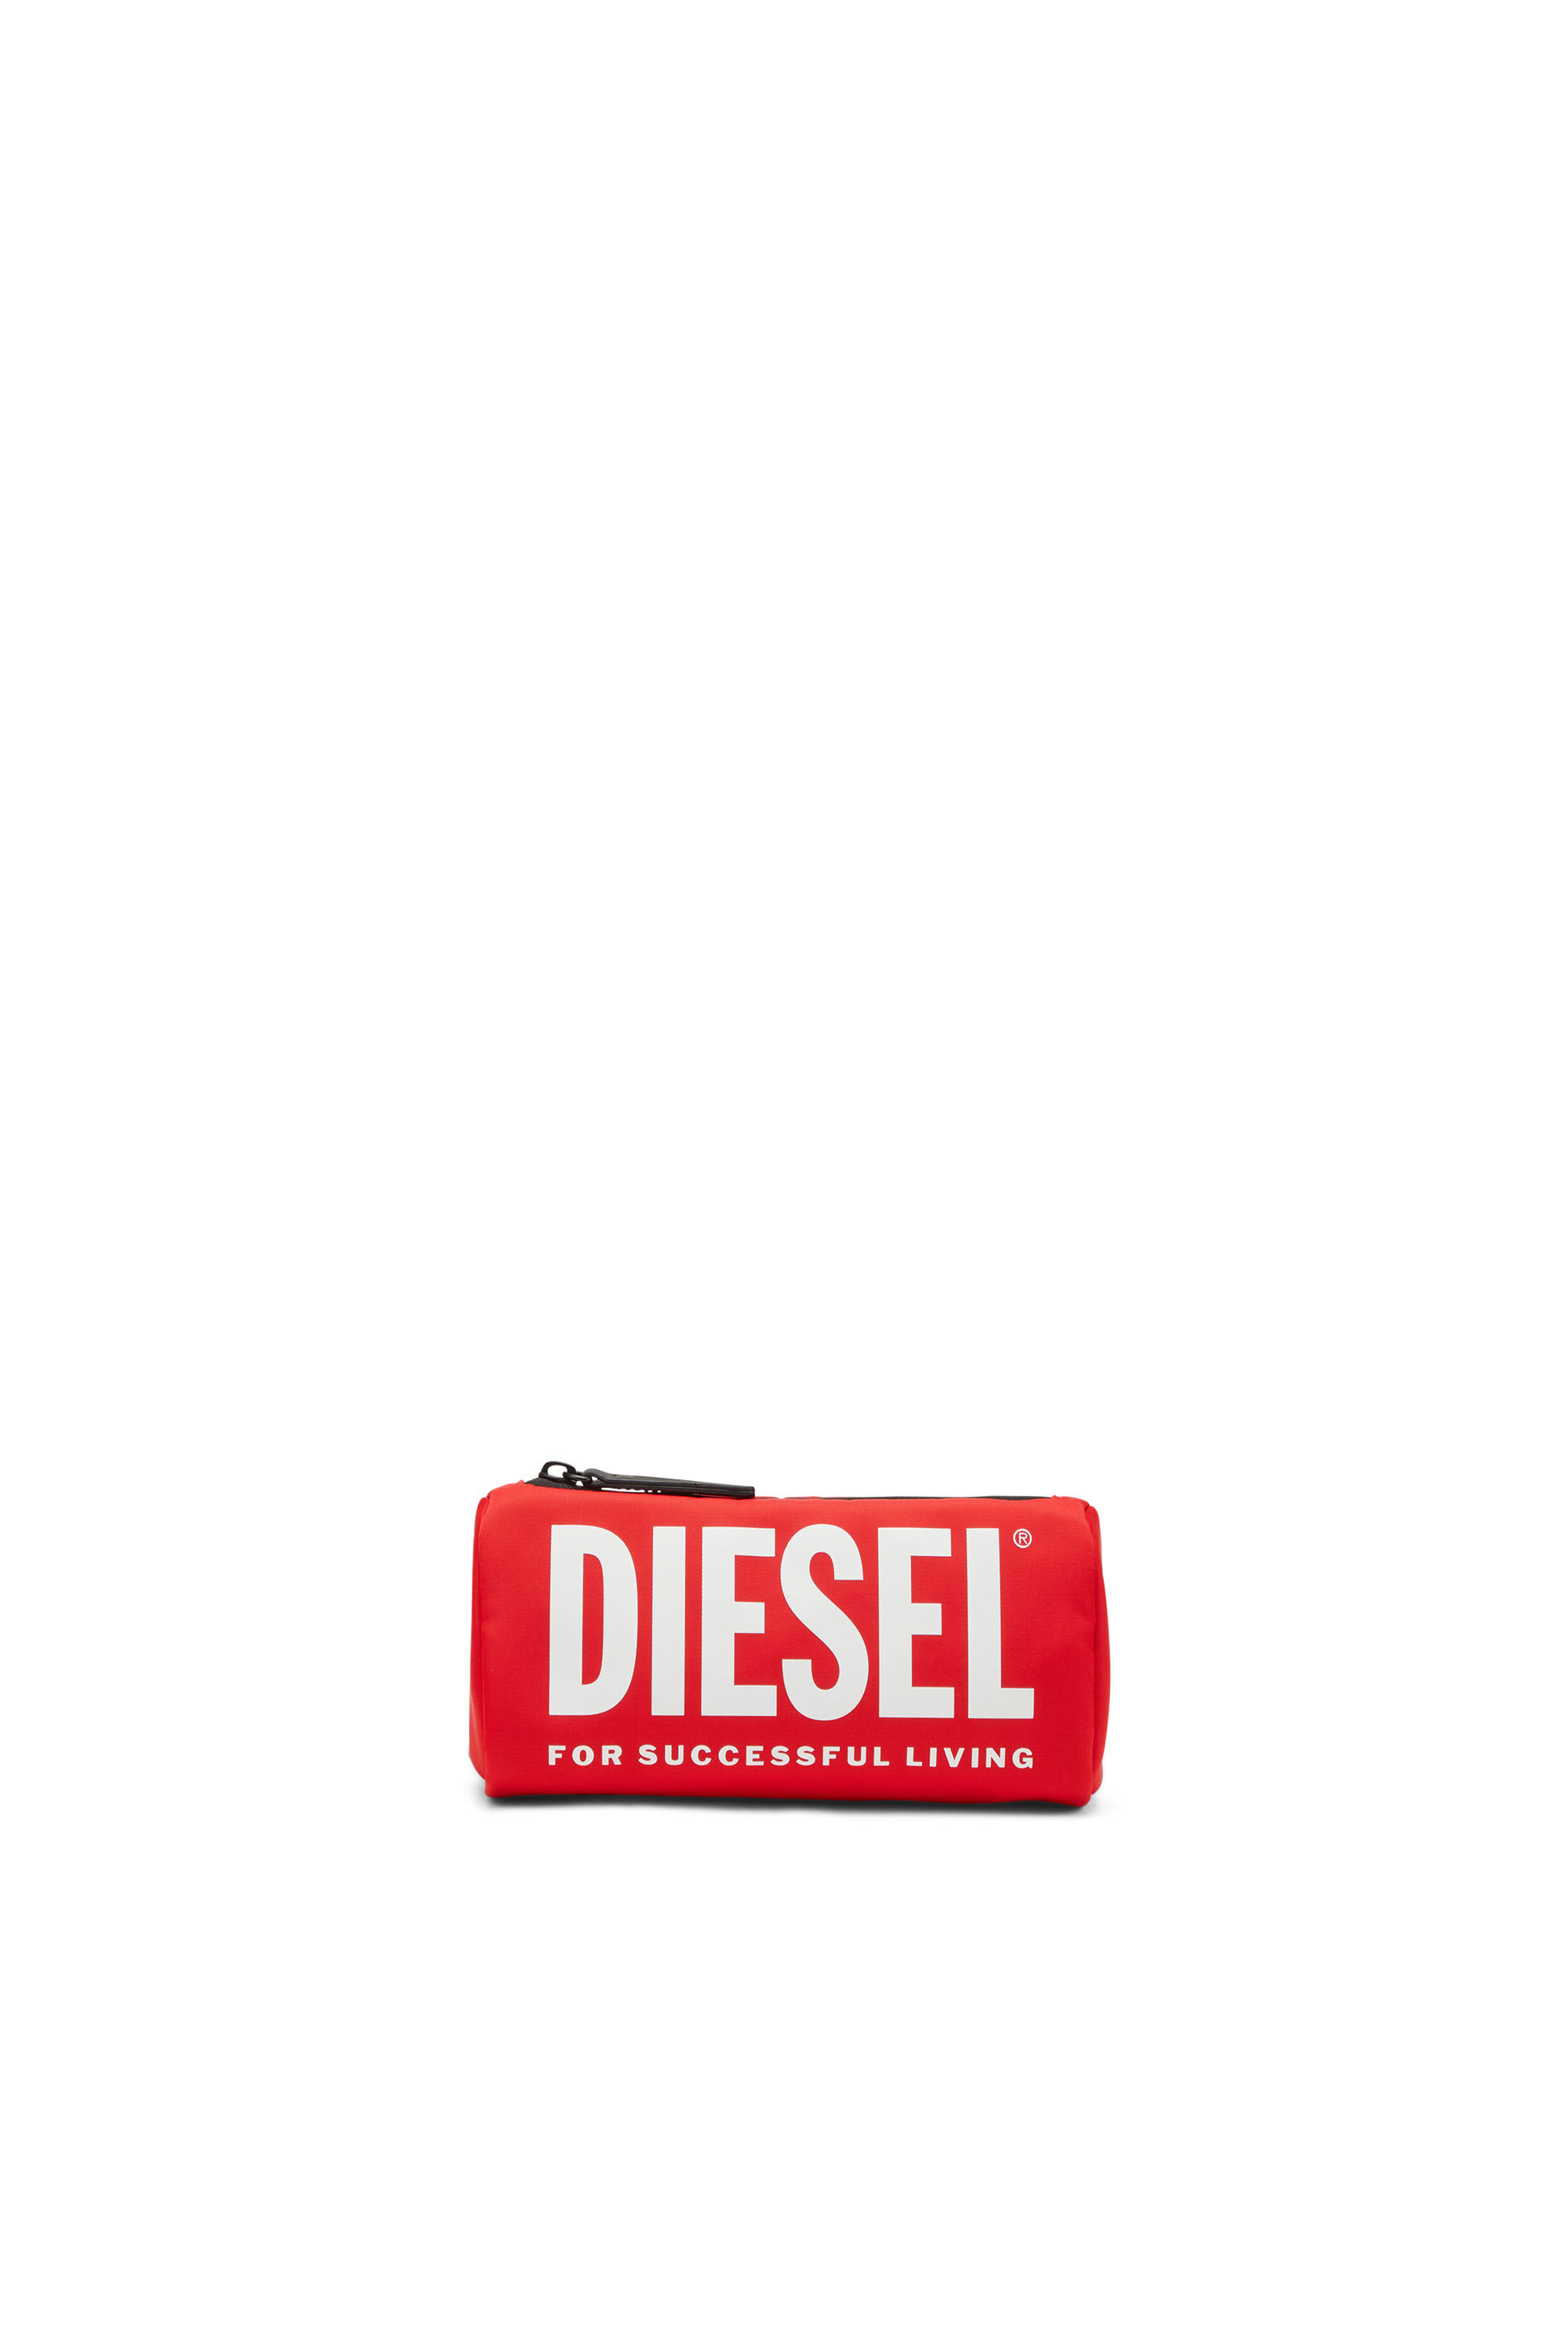 Diesel - WCASELOGO, Red - Image 1